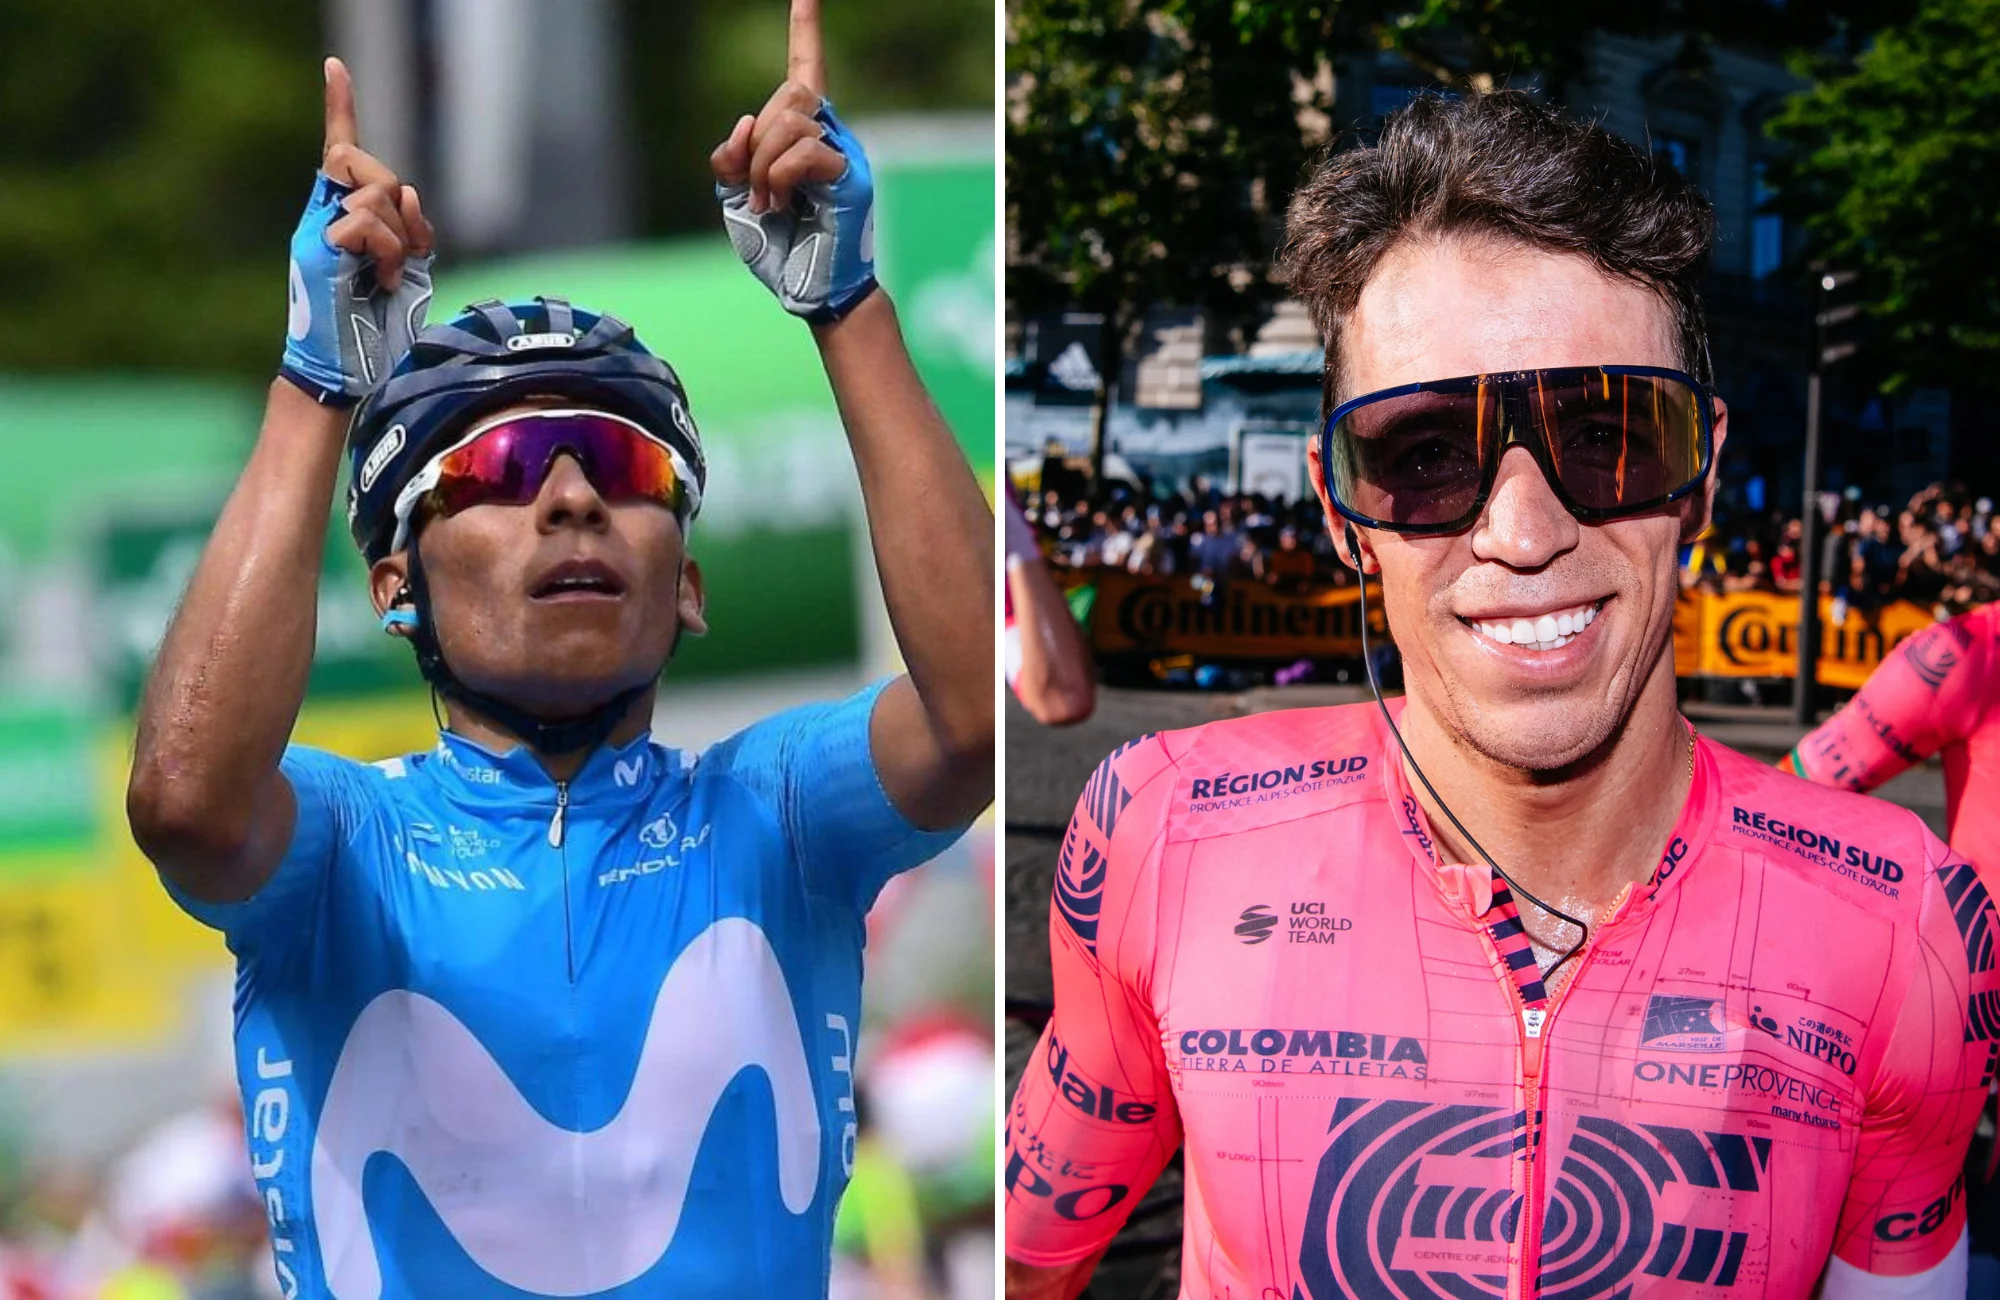 Ciclistas colombianos en el Giro de Italia: Historial, victorias de etapa y liderazgo de clasificaciones